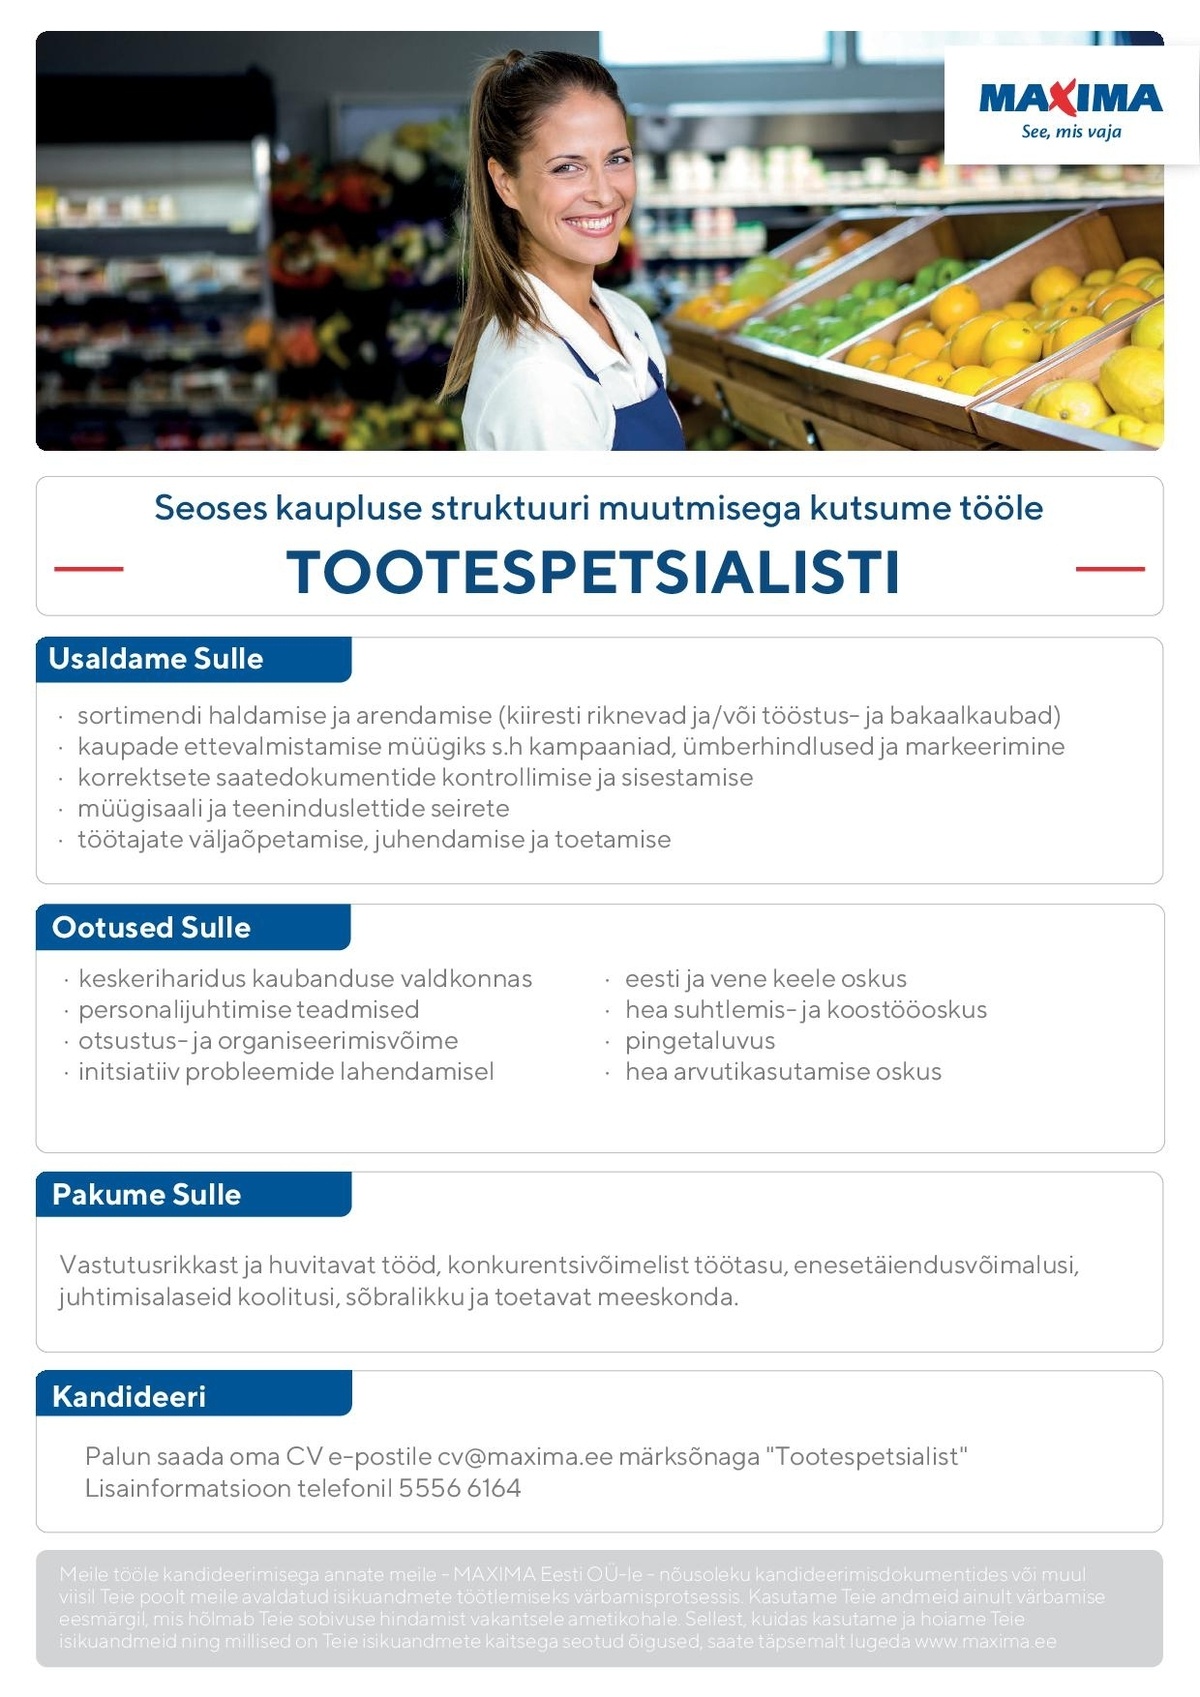 Maxima Eesti OÜ Tootespetsialist Tartu Maximas